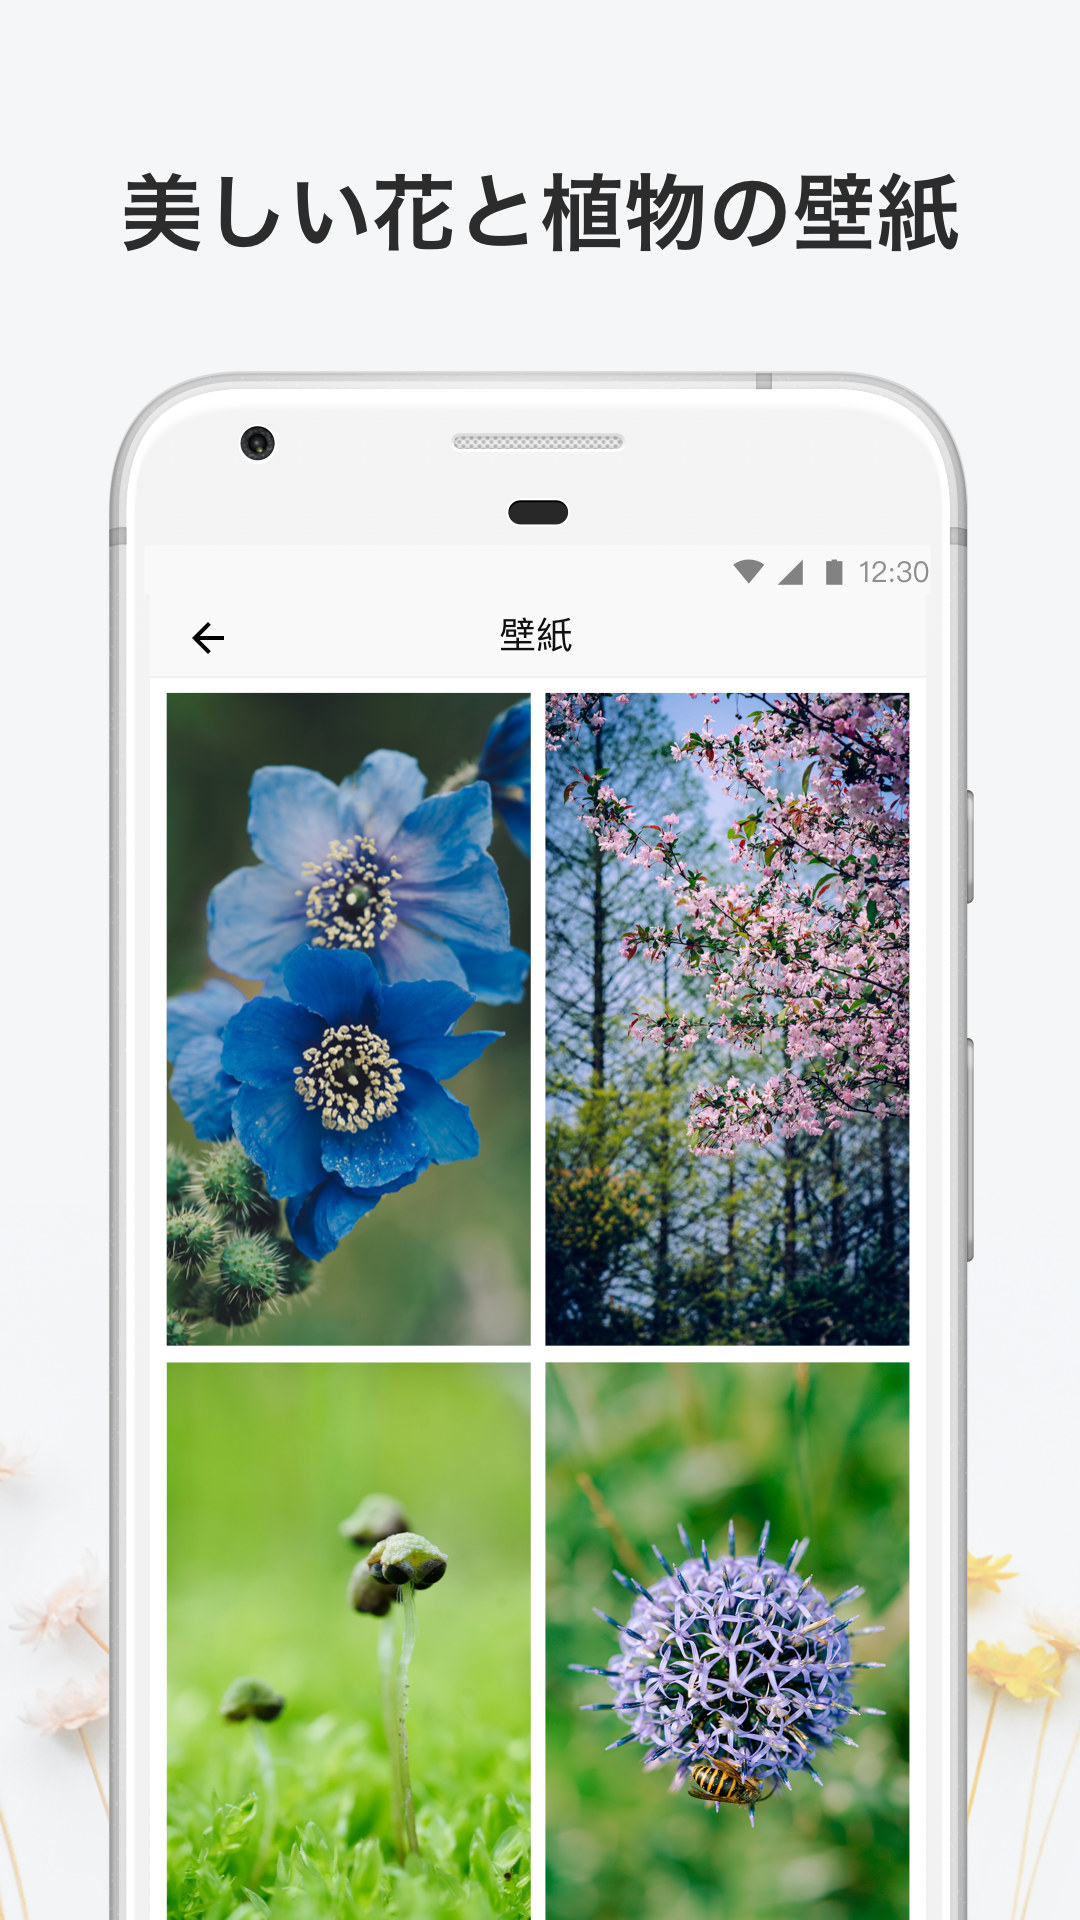 無料で Picturethis 撮ったら 判る 1秒植物図鑑 アプリの最新版 Apk2 1 6をダウンロードー Android用 Picturethis 撮ったら 判る 1秒植物図鑑 Apk の最新バージョンをダウンロード Apkfab Com Jp